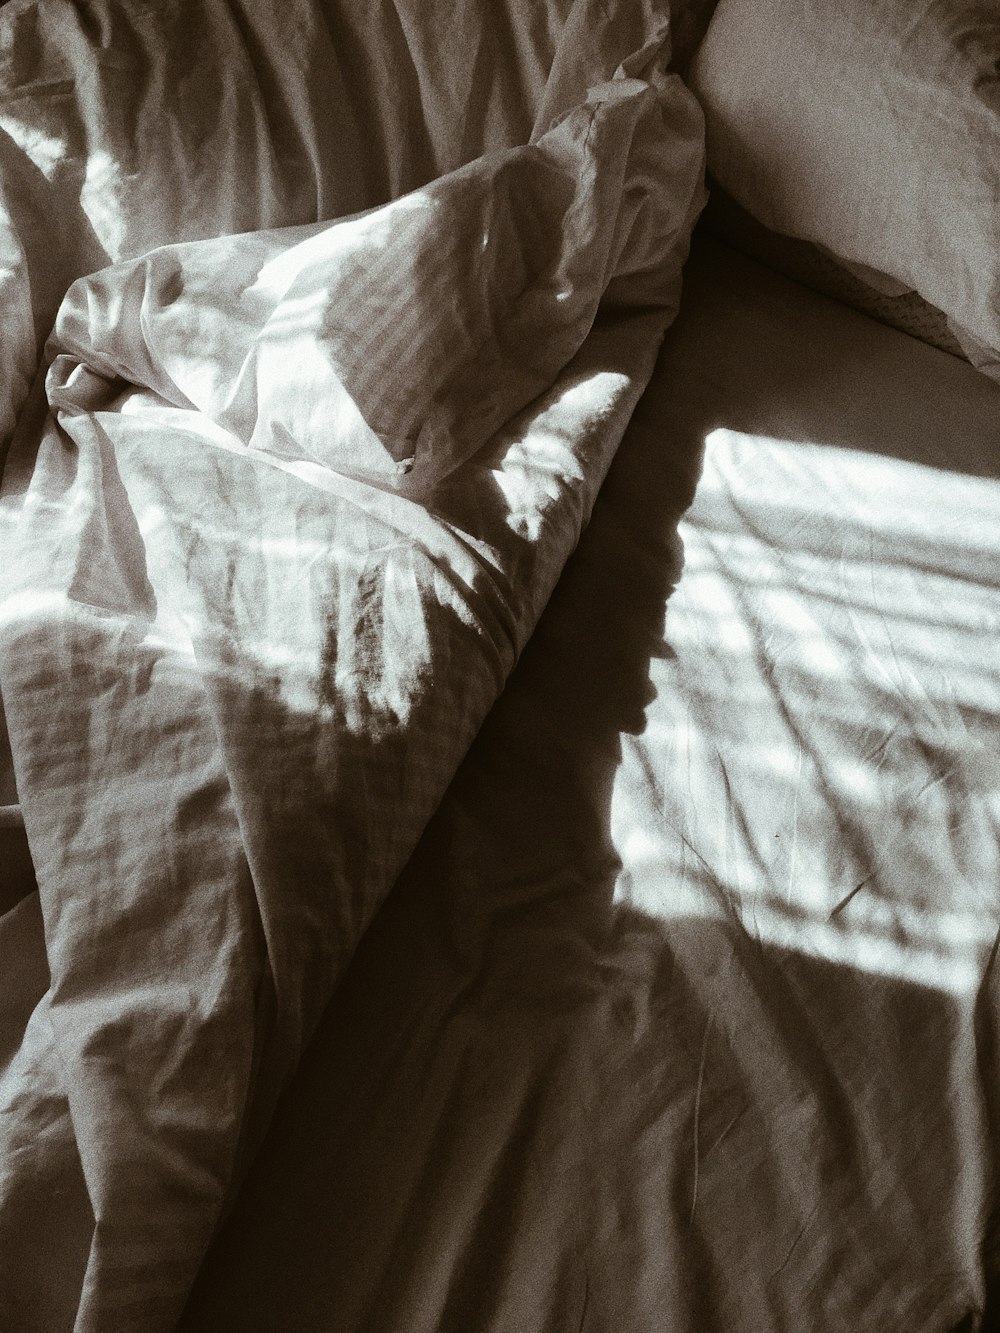 cuscino bianco sul letto